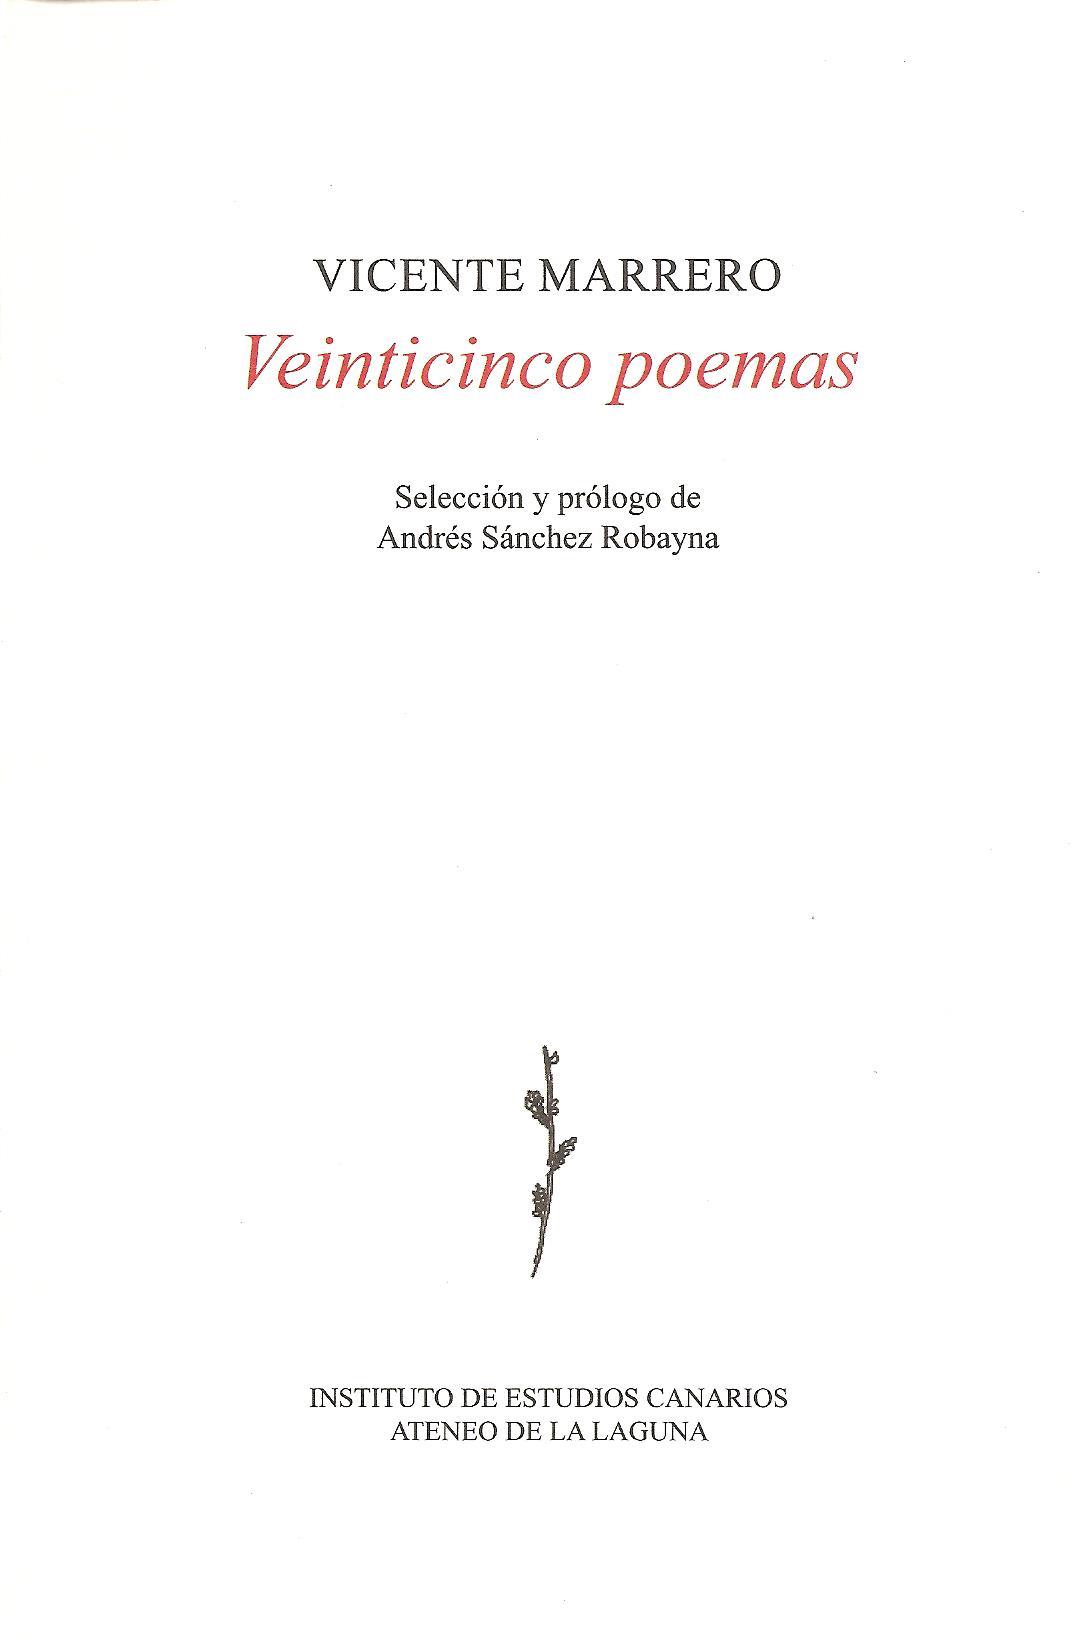 Imagen de portada del libro Veinticinco poemas